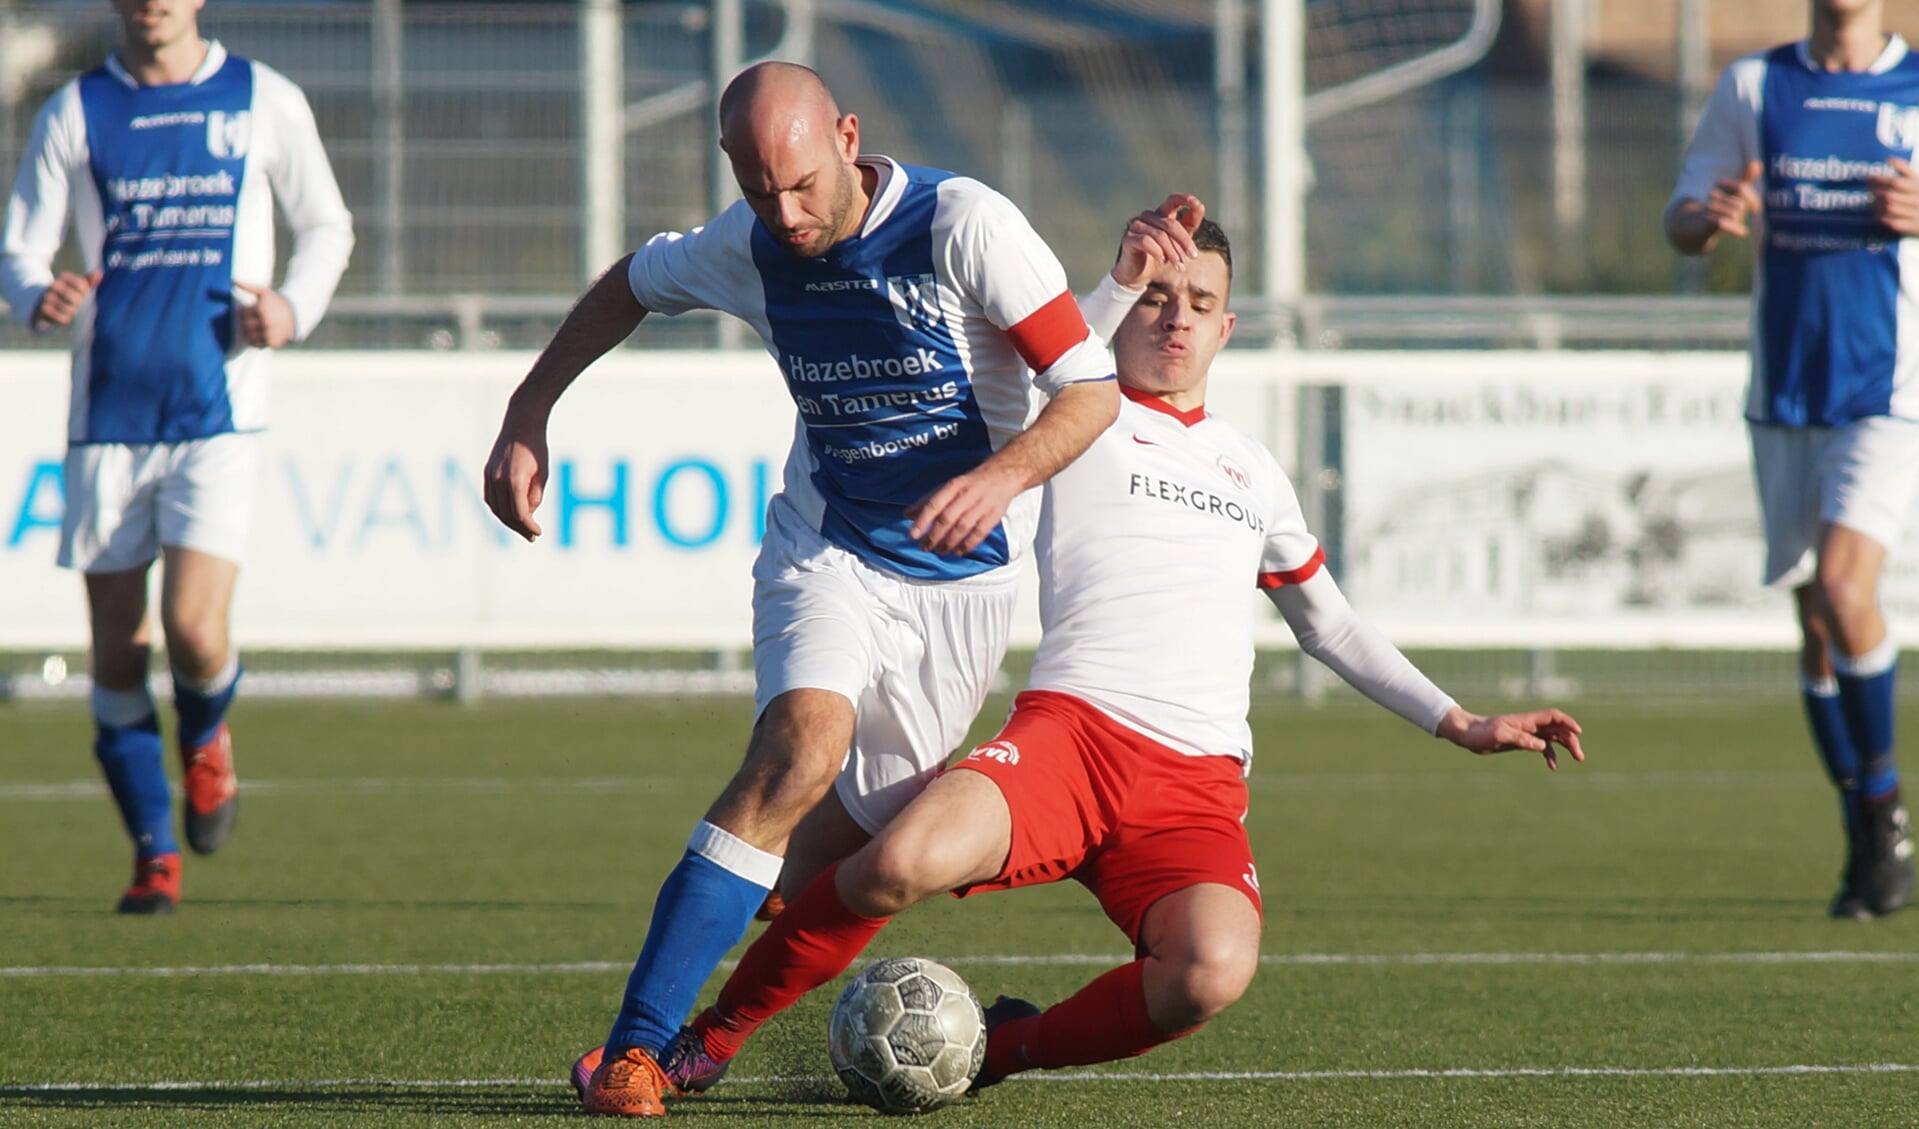 Daniël van den Hoven is een speler van Linschoten de baas. (foto: Stef Hoogendijk)